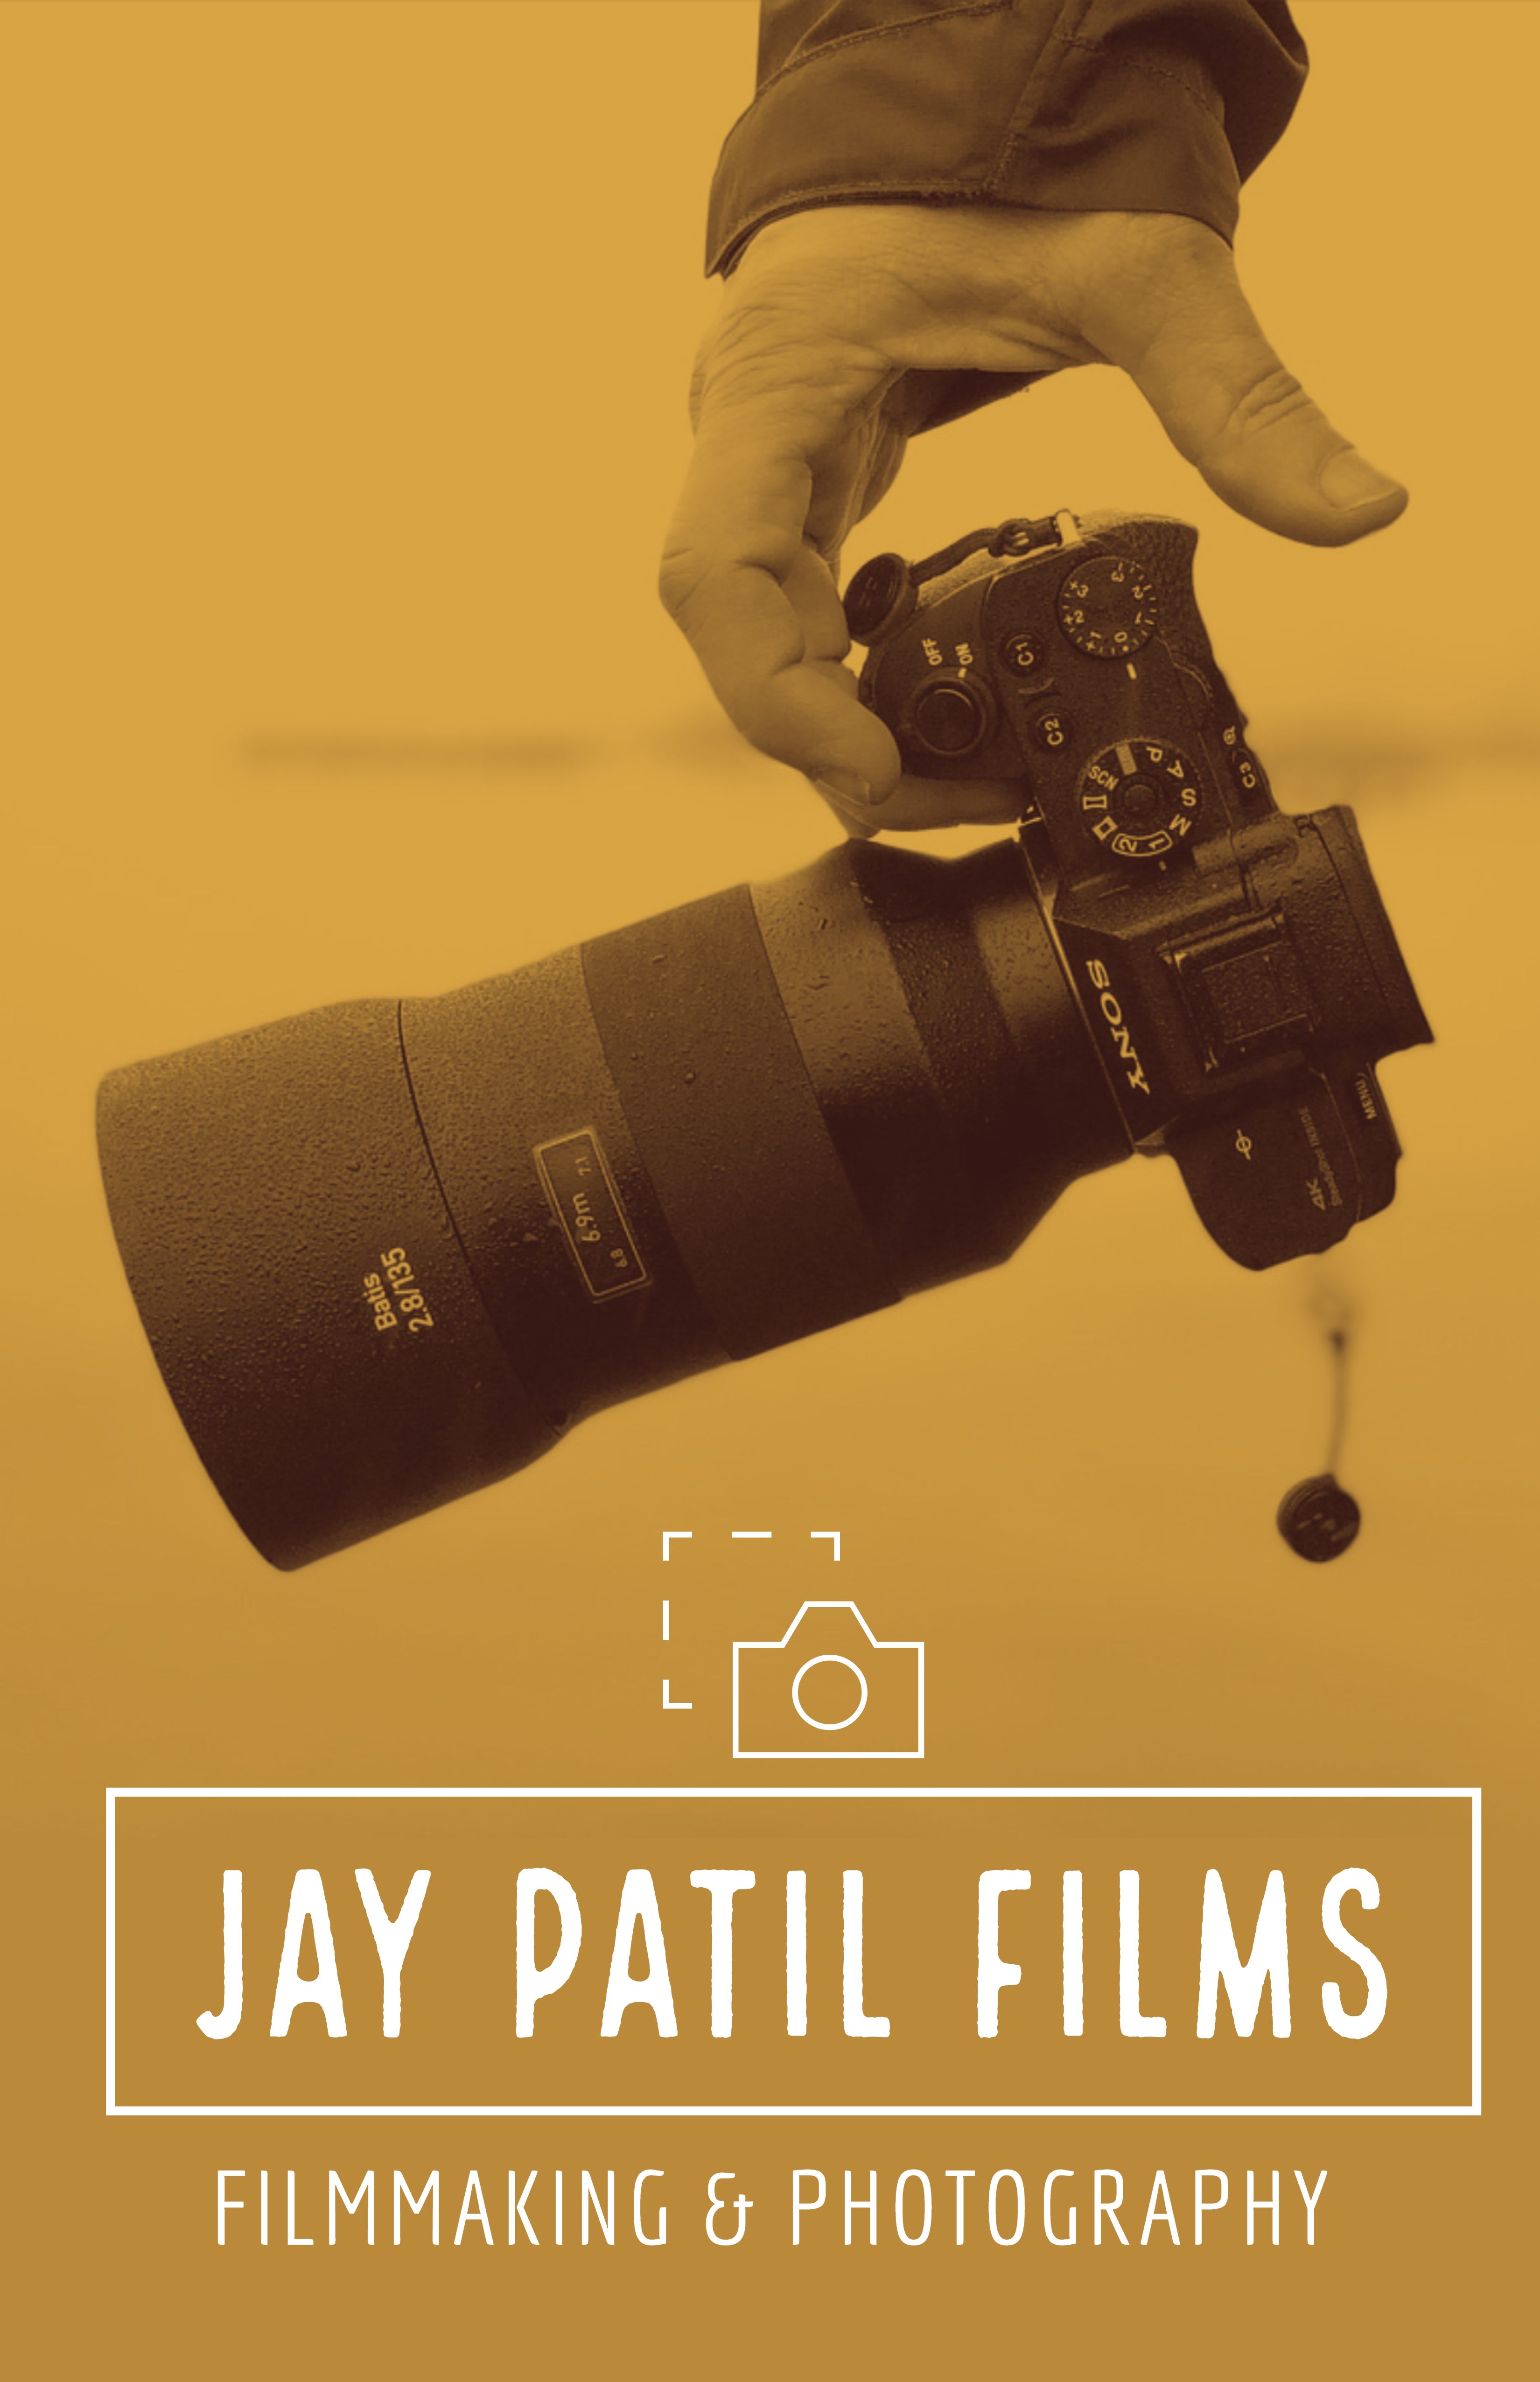 Jay Patil Films